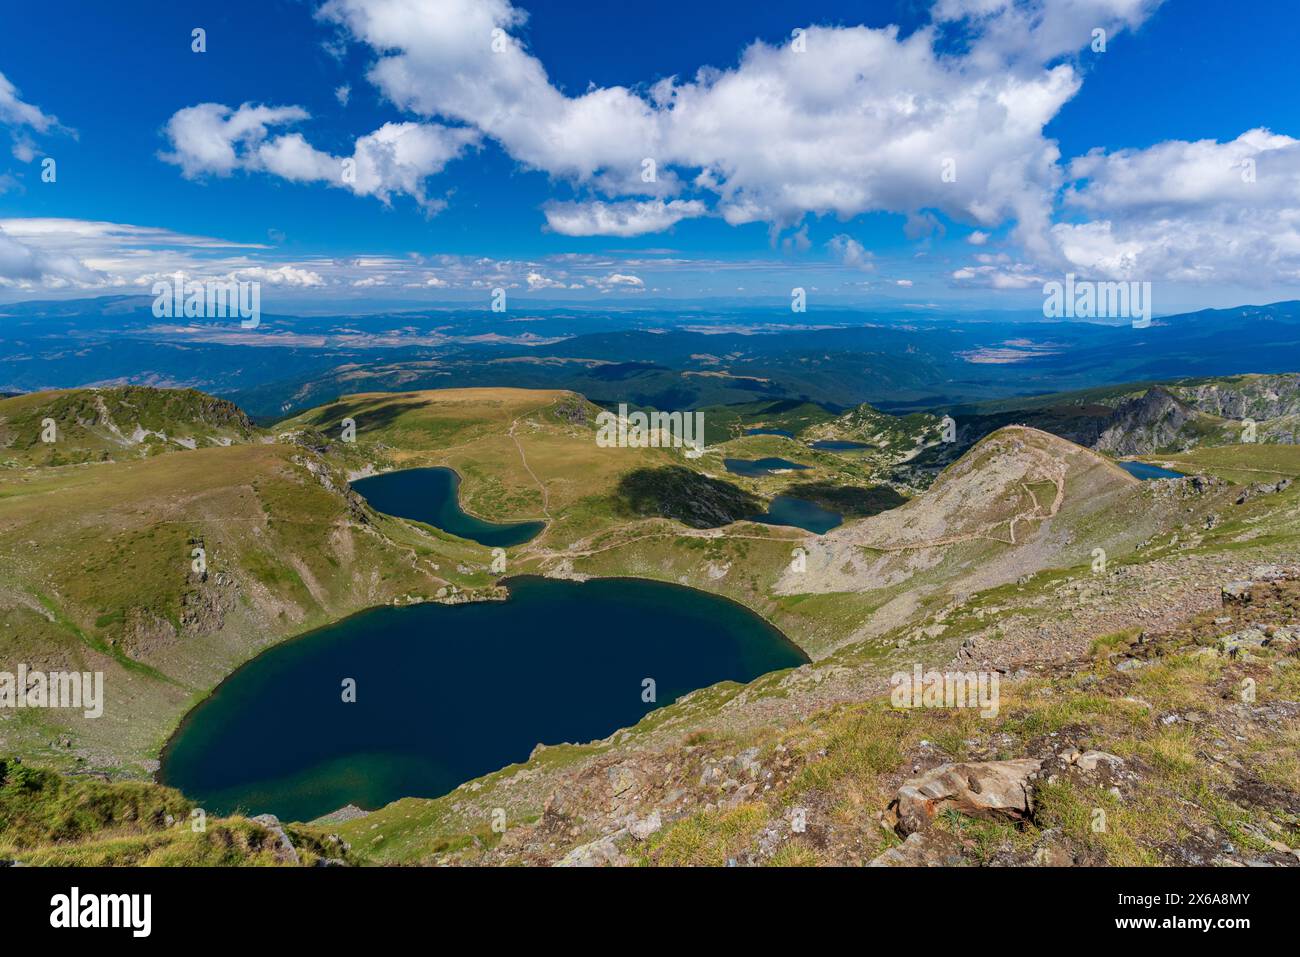 The Seven Rila Lakes in the Rila Mountain, Bulgaria Stock Photo